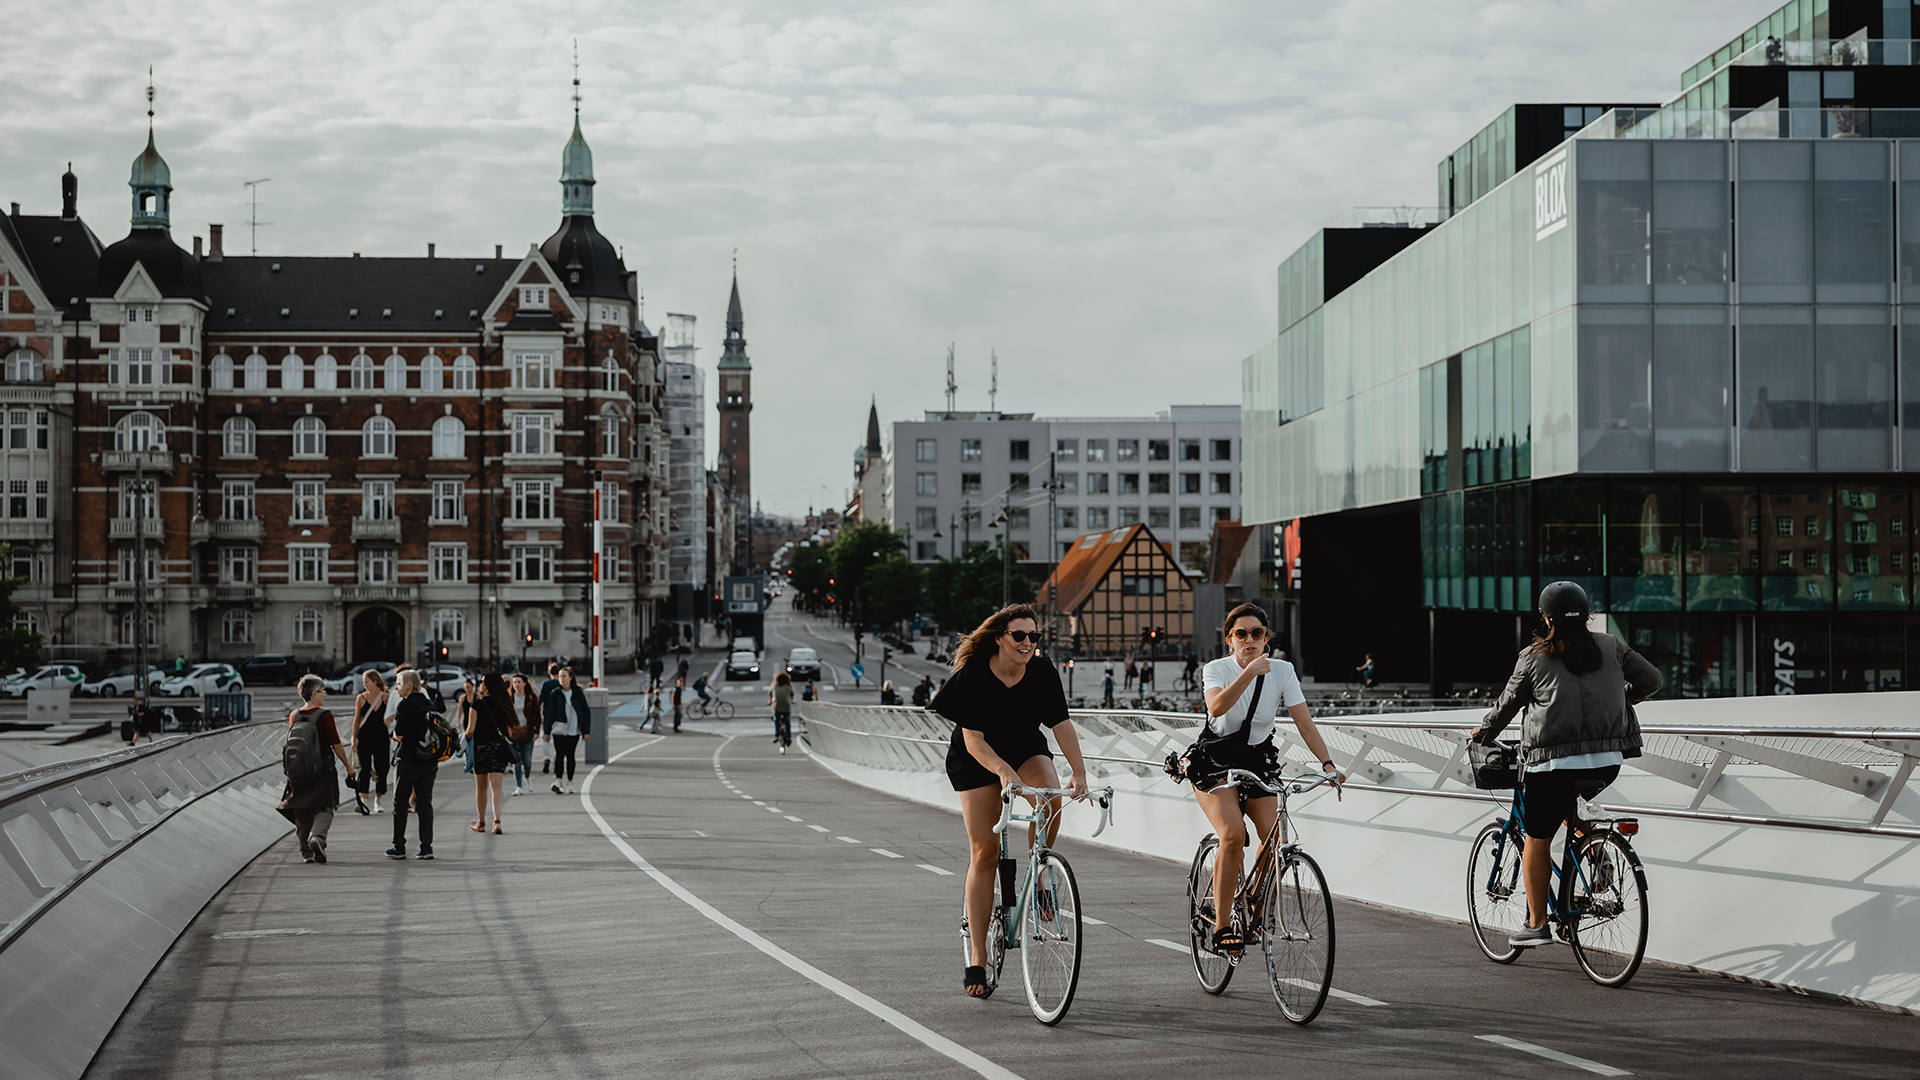 Bike infrastructure in Copenhagen